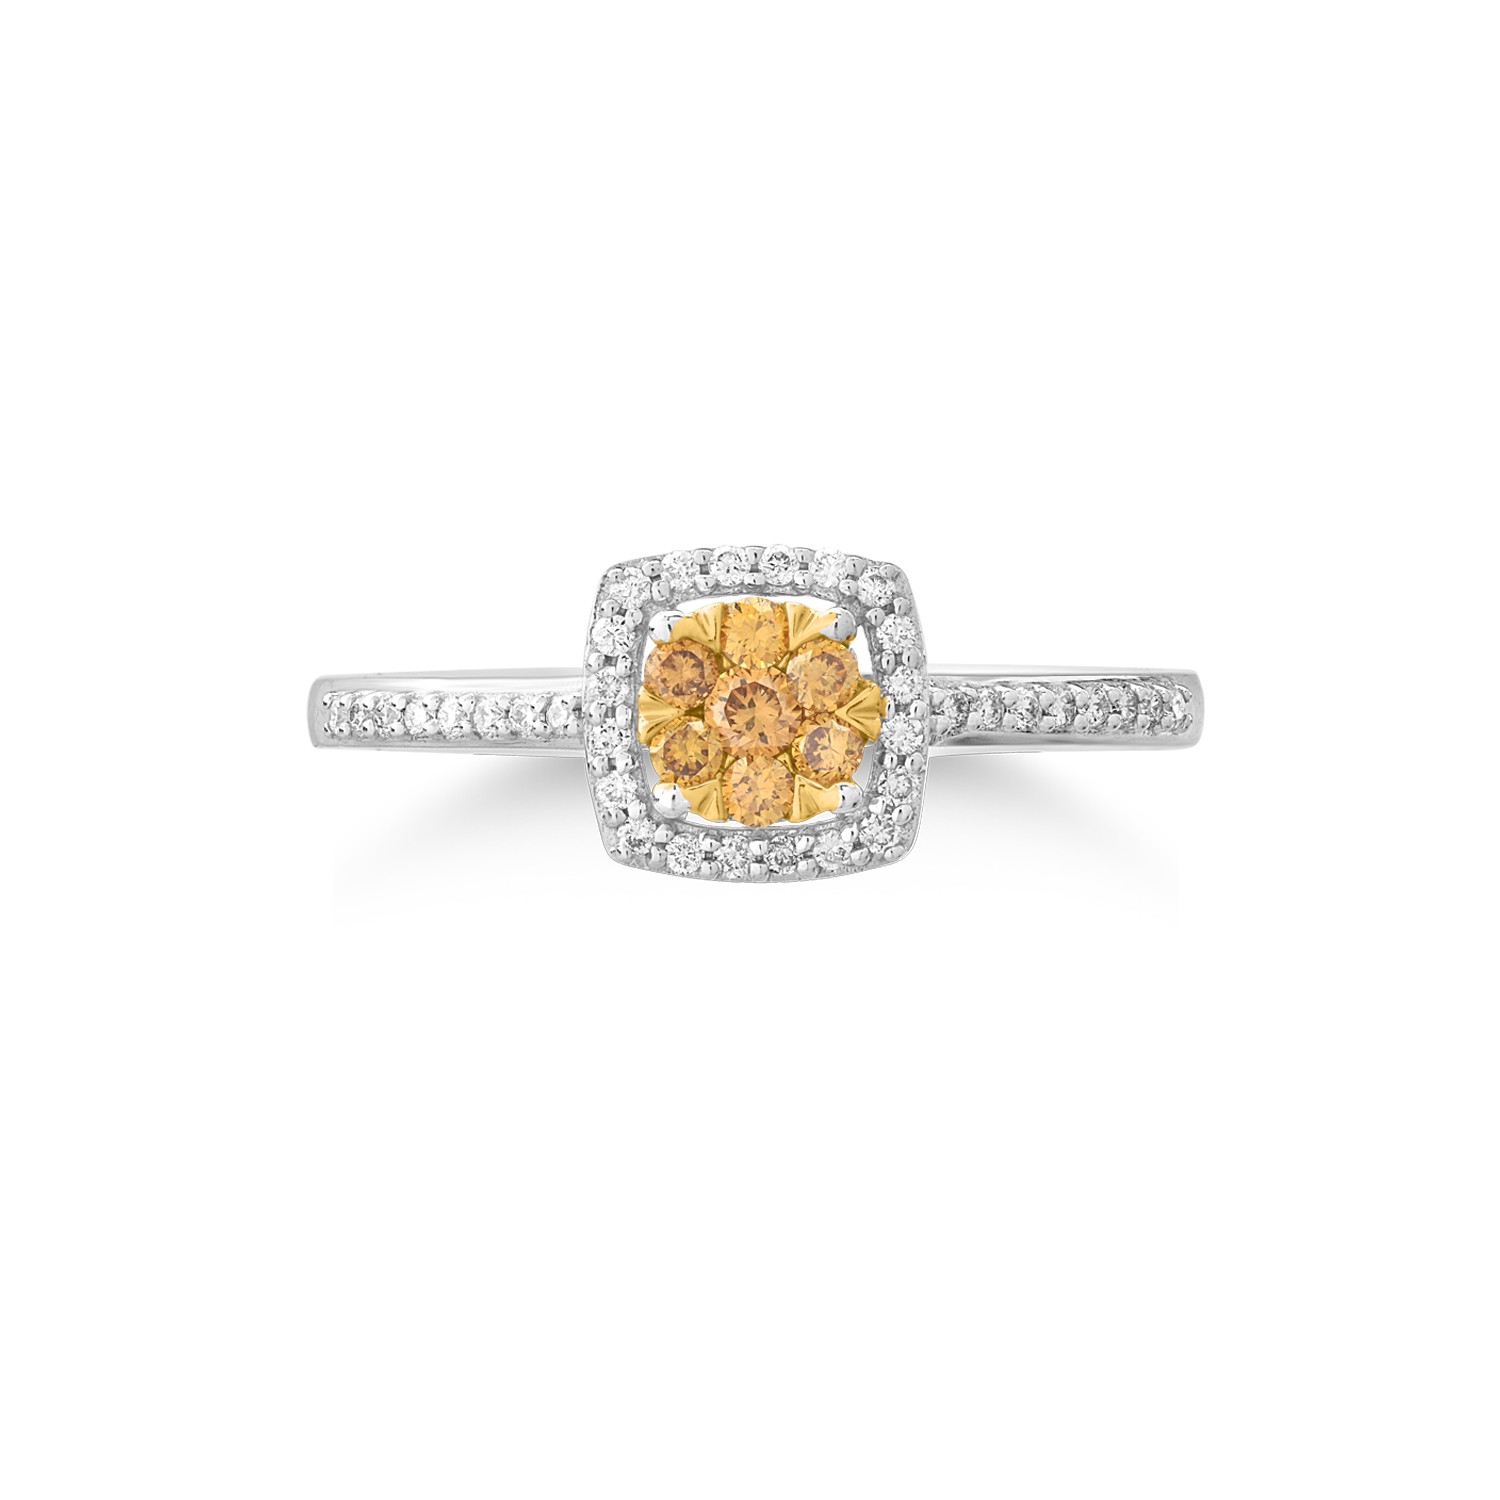 14 karátos fehér-sárga arany gyűrű 0.161 karátos díszes gyémántokkal és 0.128 karátos gyémántokkal